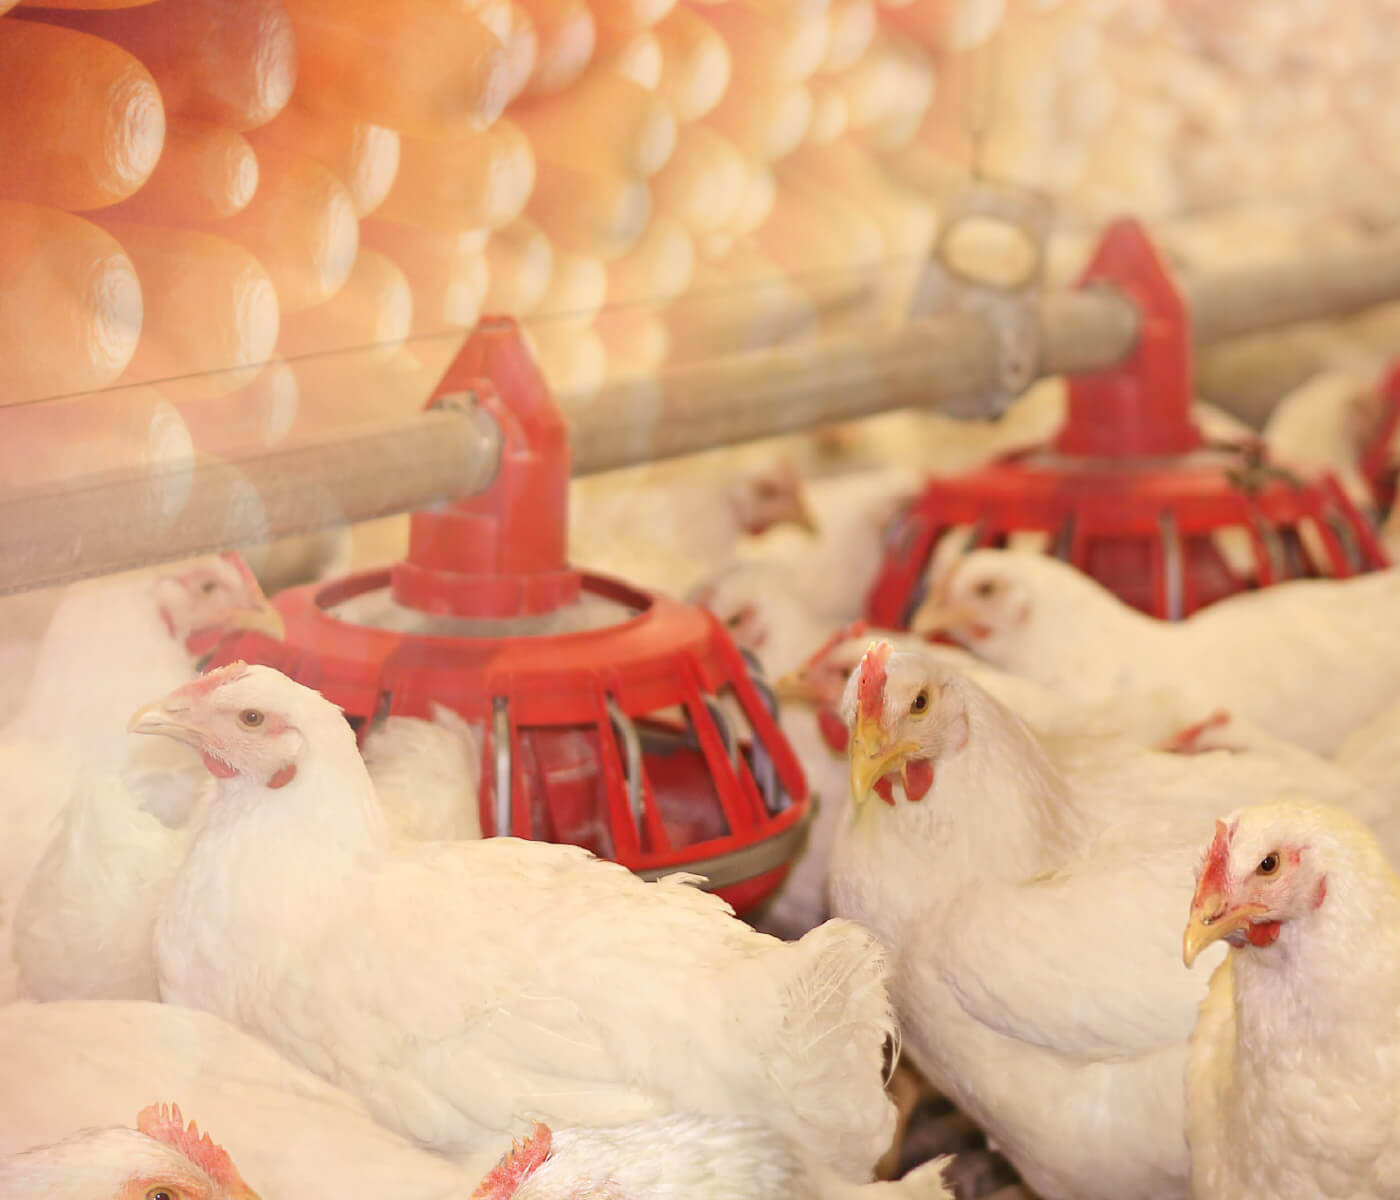 Saúde intestinal de frangos de corte – Novos tempos, novos desafios